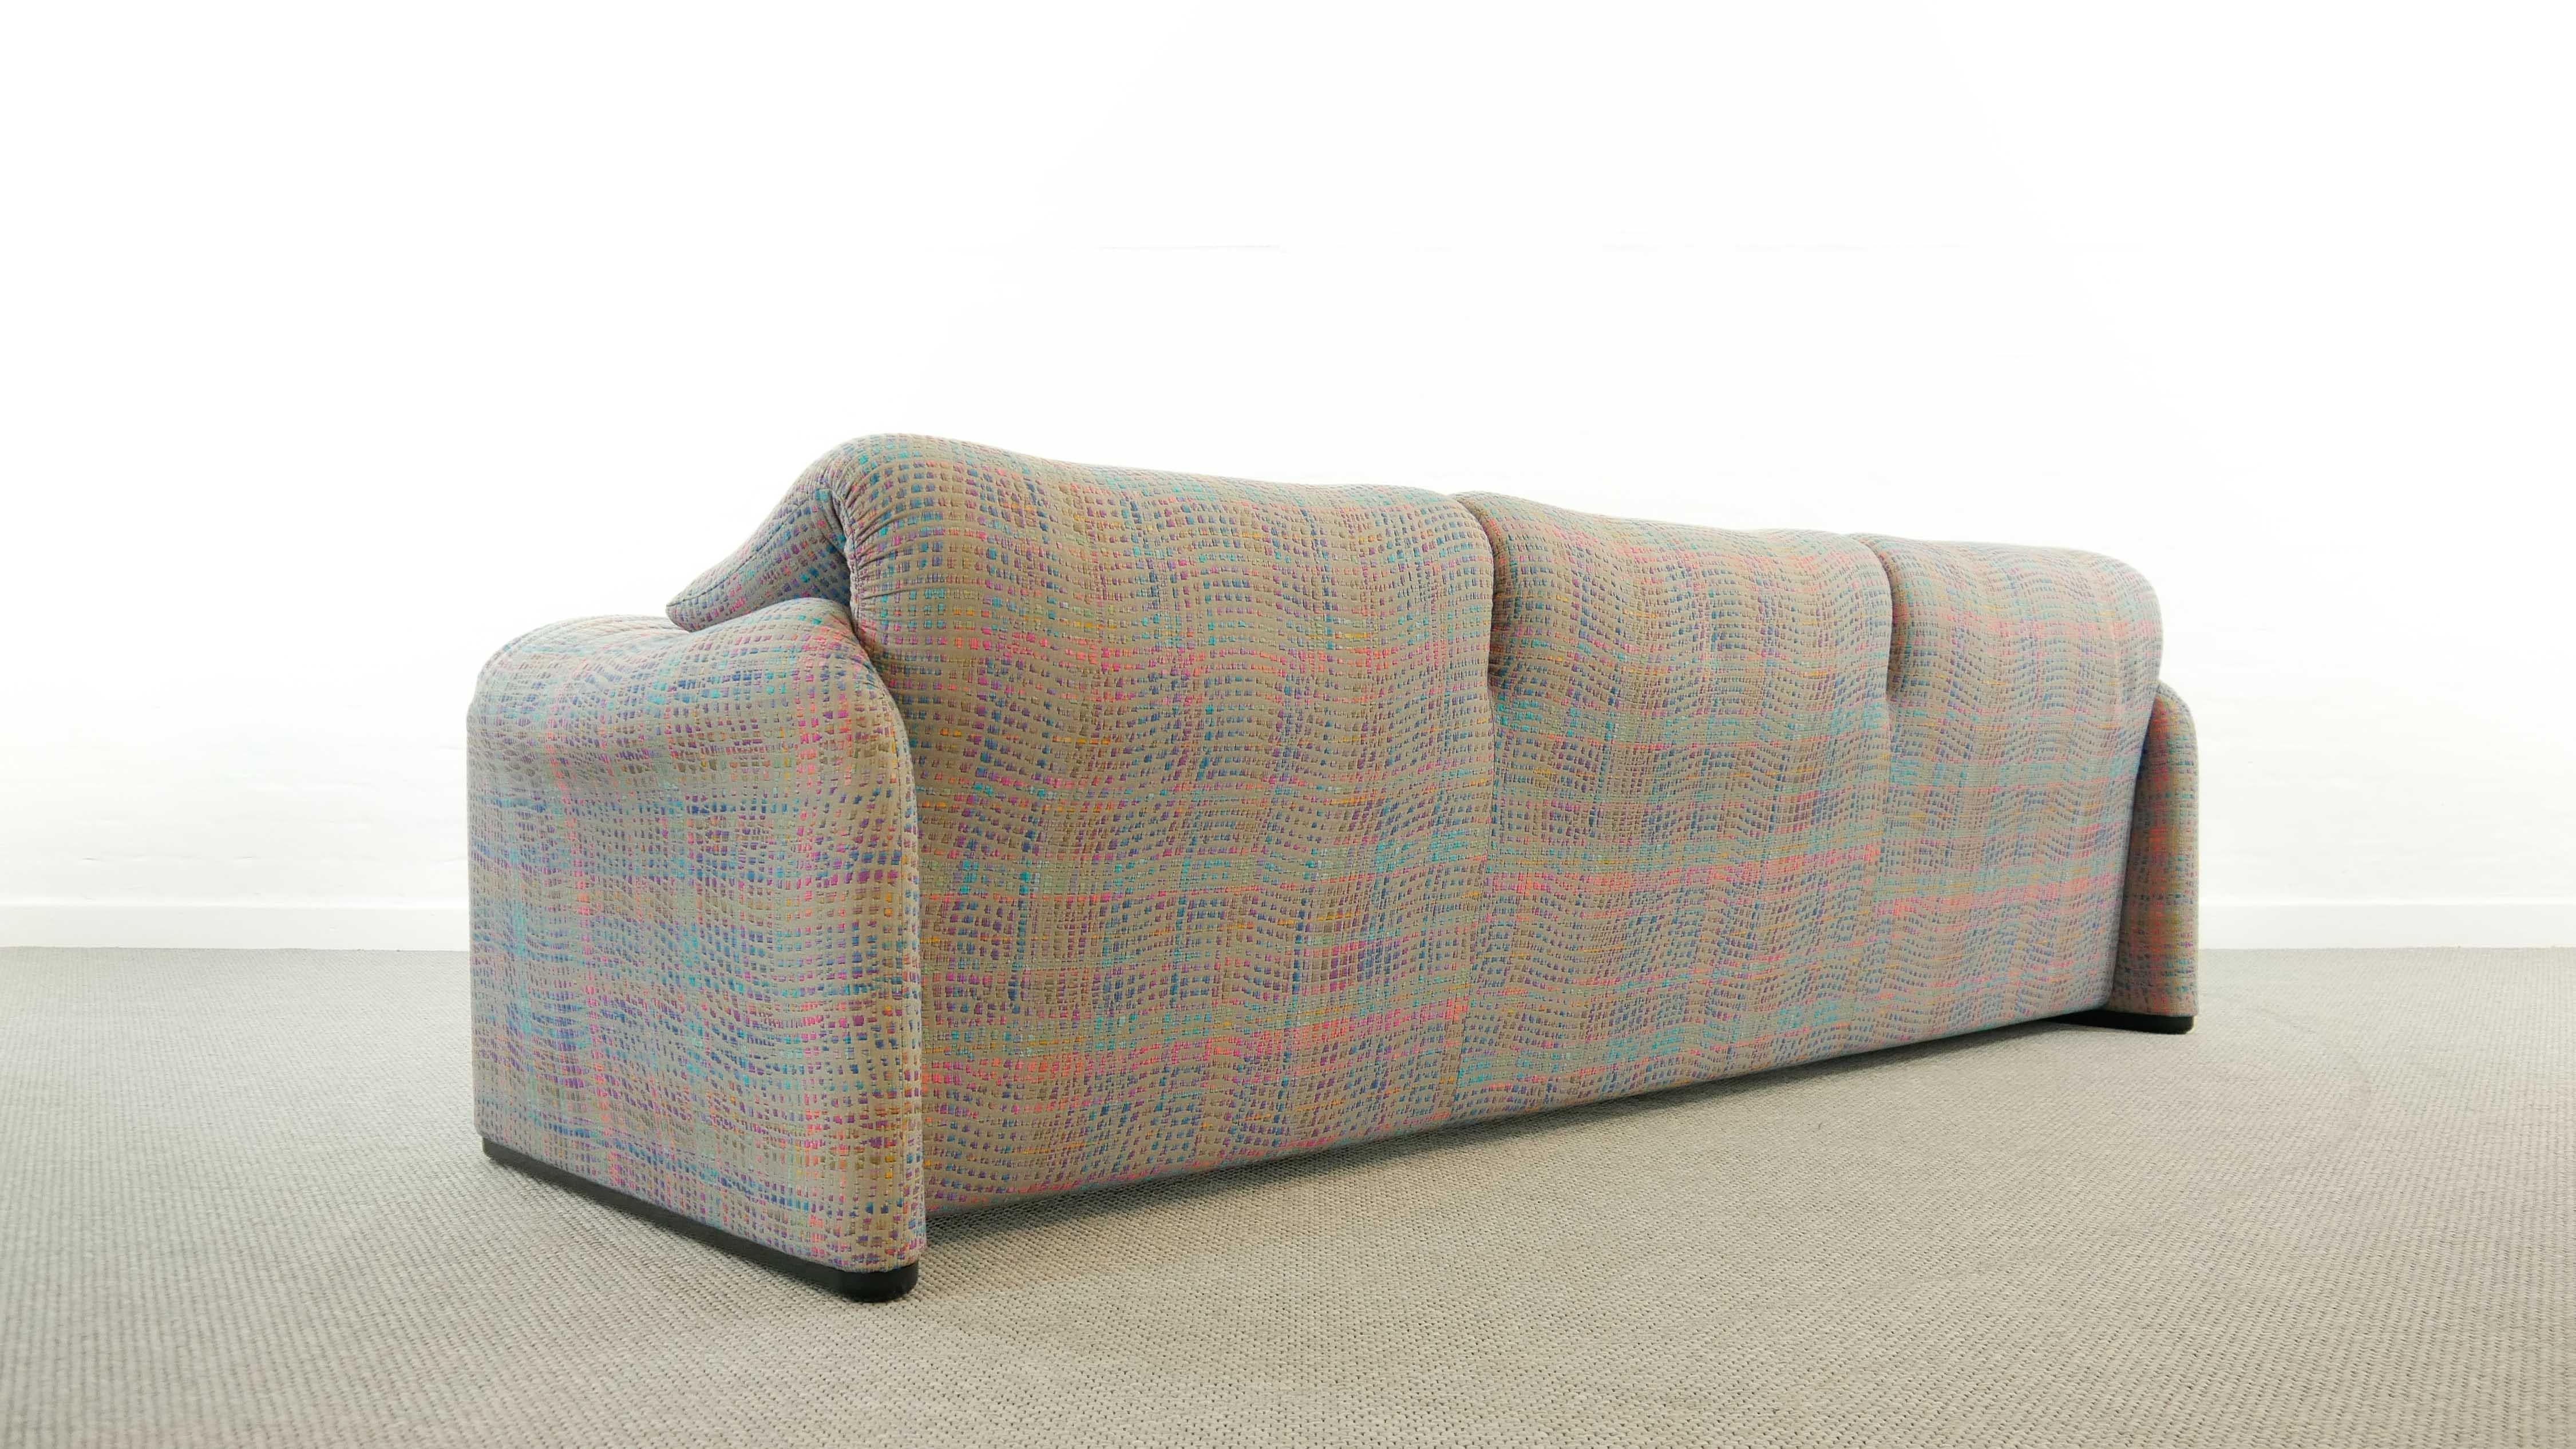 Maralunga 3-Seat Sofa by Vico Magistretti for Cassina in Grey-Multicolore Fabric 3